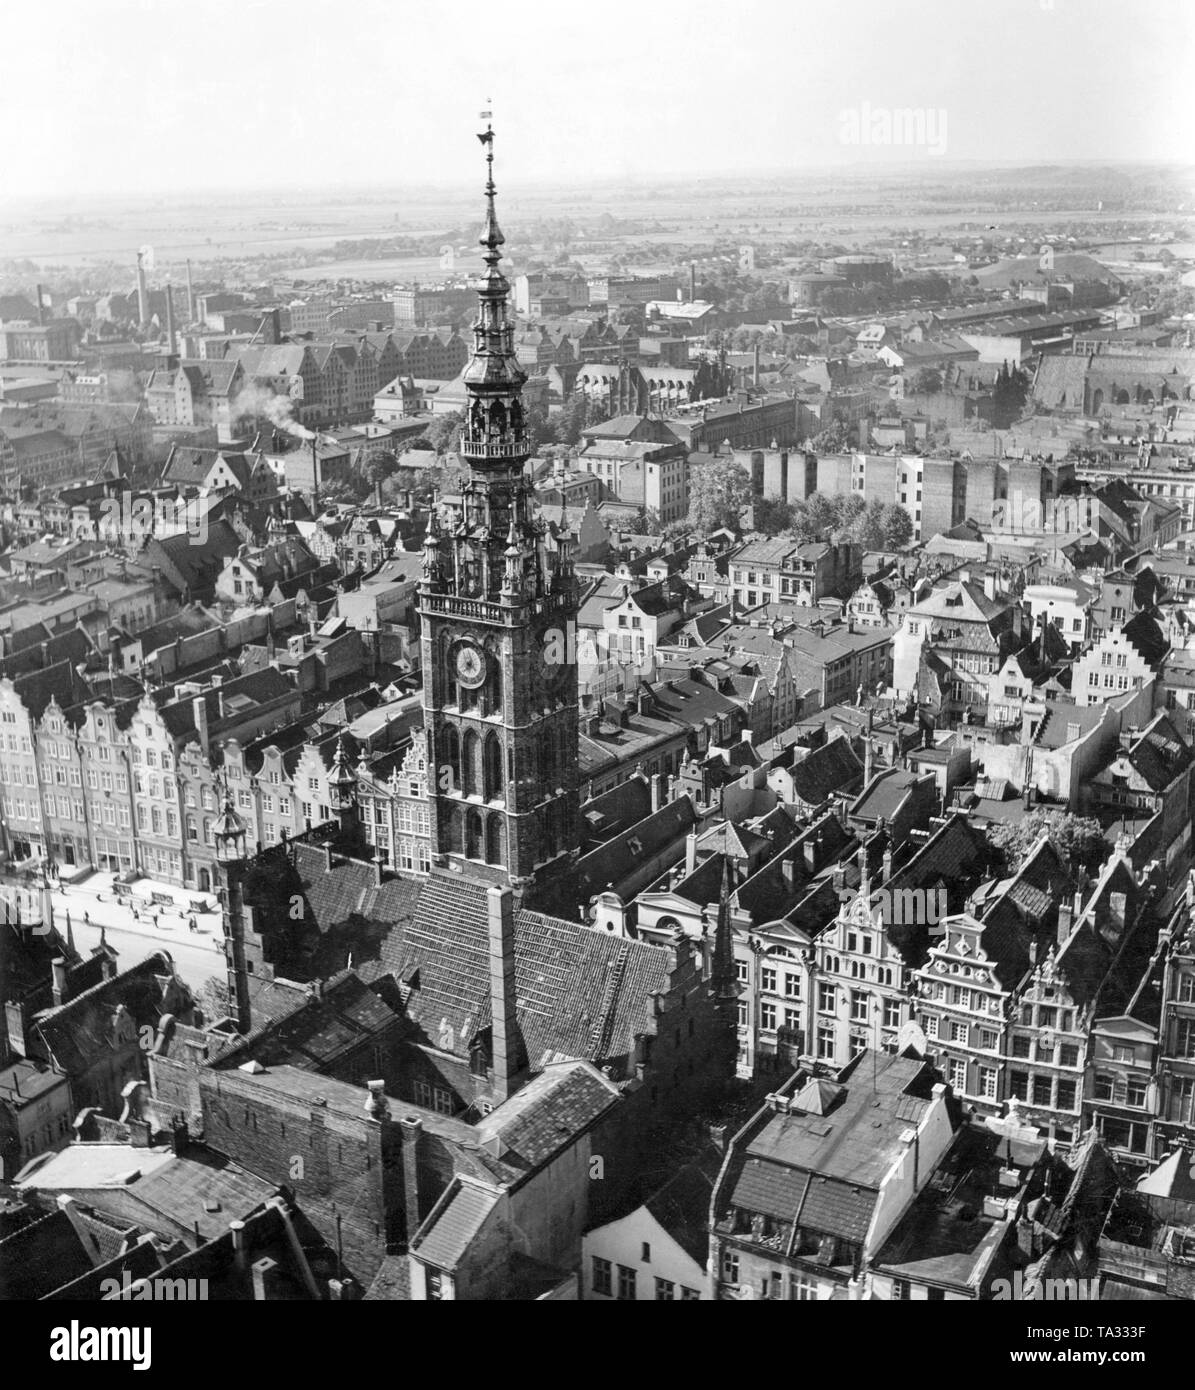 Blick auf den Turm des Rathauses der Stadt und der Lange Markt in Danzig, von der Kirche St. Maria gesehen. Bereits am Ende des 13. Jahrhunderts gab es einen Vorläufer, wurde der Turm wurde von 1486 bis 1488 durch Heinrich Hetzel gebaut. Die wichtigste Stadt ist die eigentliche Altstadt von Danzig, da es älter ist als die Altstadt. Der Bezirk ist heute das eigentliche Stadtzentrum. Stockfoto